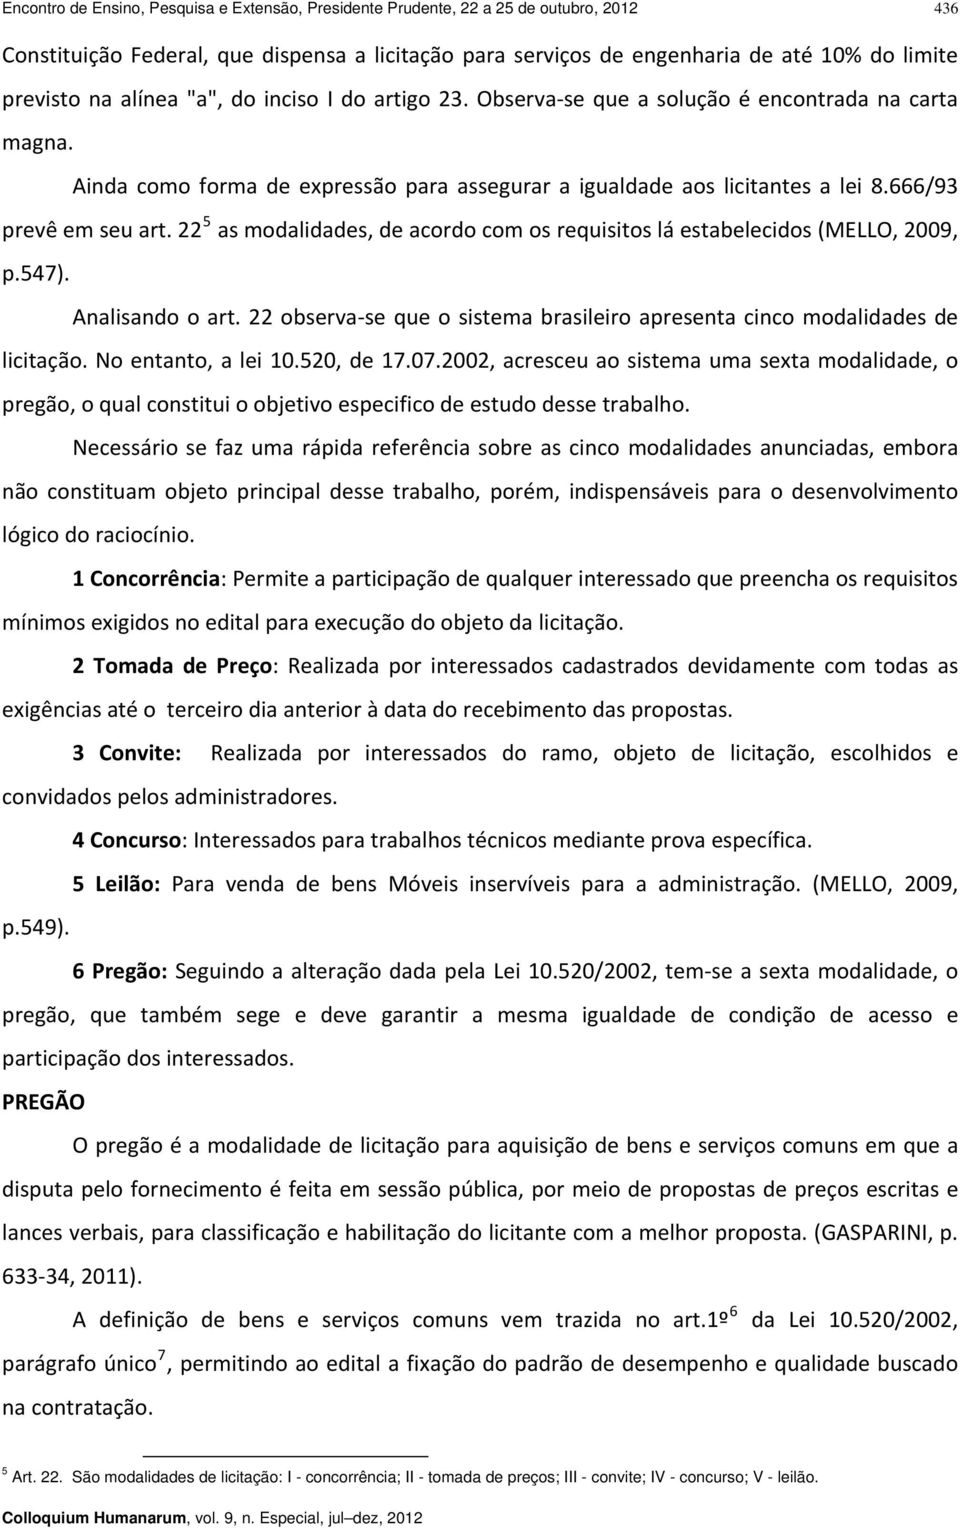 22 5 as modalidades, de acordo com os requisitos lá estabelecidos (MELLO, 2009, p.547). Analisando o art. 22 observa se que o sistema brasileiro apresenta cinco modalidades de licitação.